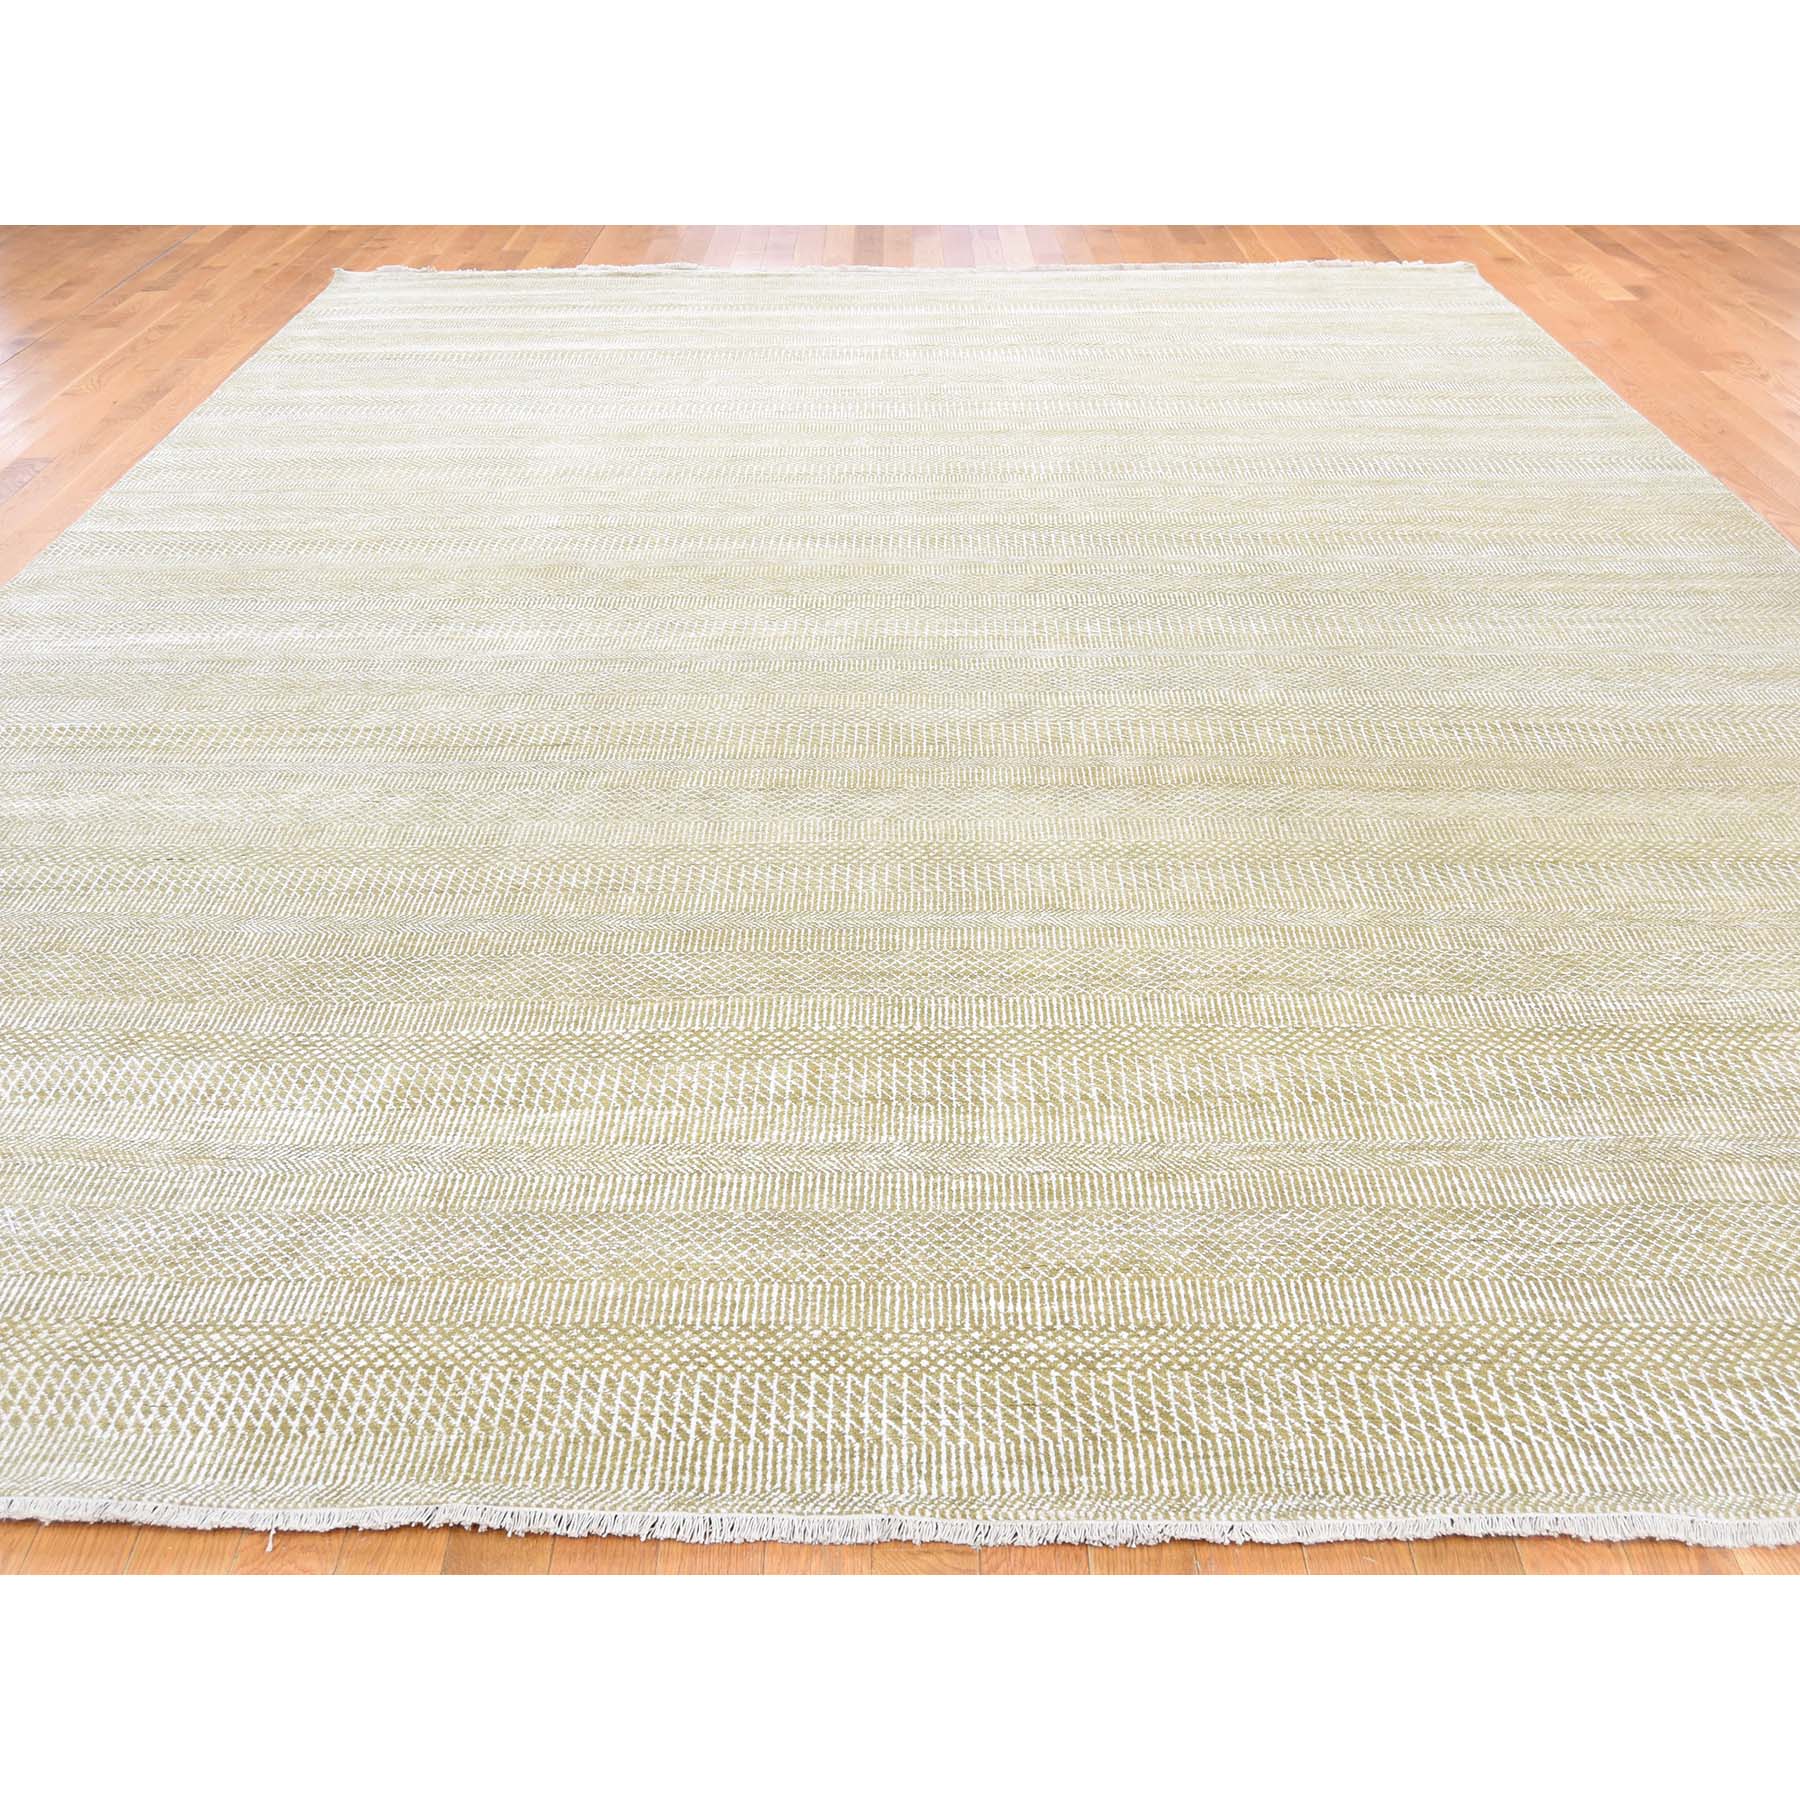 10'1"x14' Hand Woven Wool and Silk Grass Design Oriental Rug 